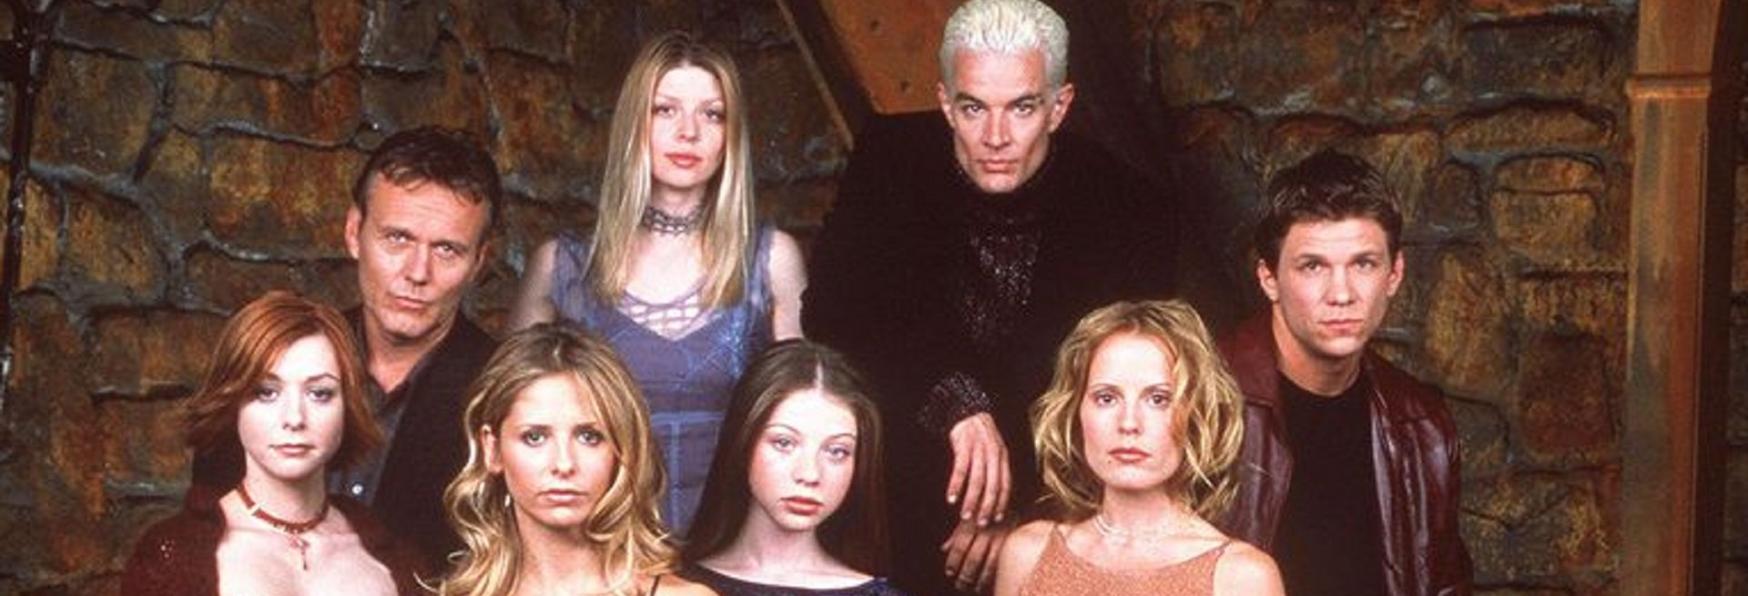 Buffy l'Ammazzavampiri: Presto disponibile su Prime Video la Serie TV anni '90 con Sarah Michelle Gellar